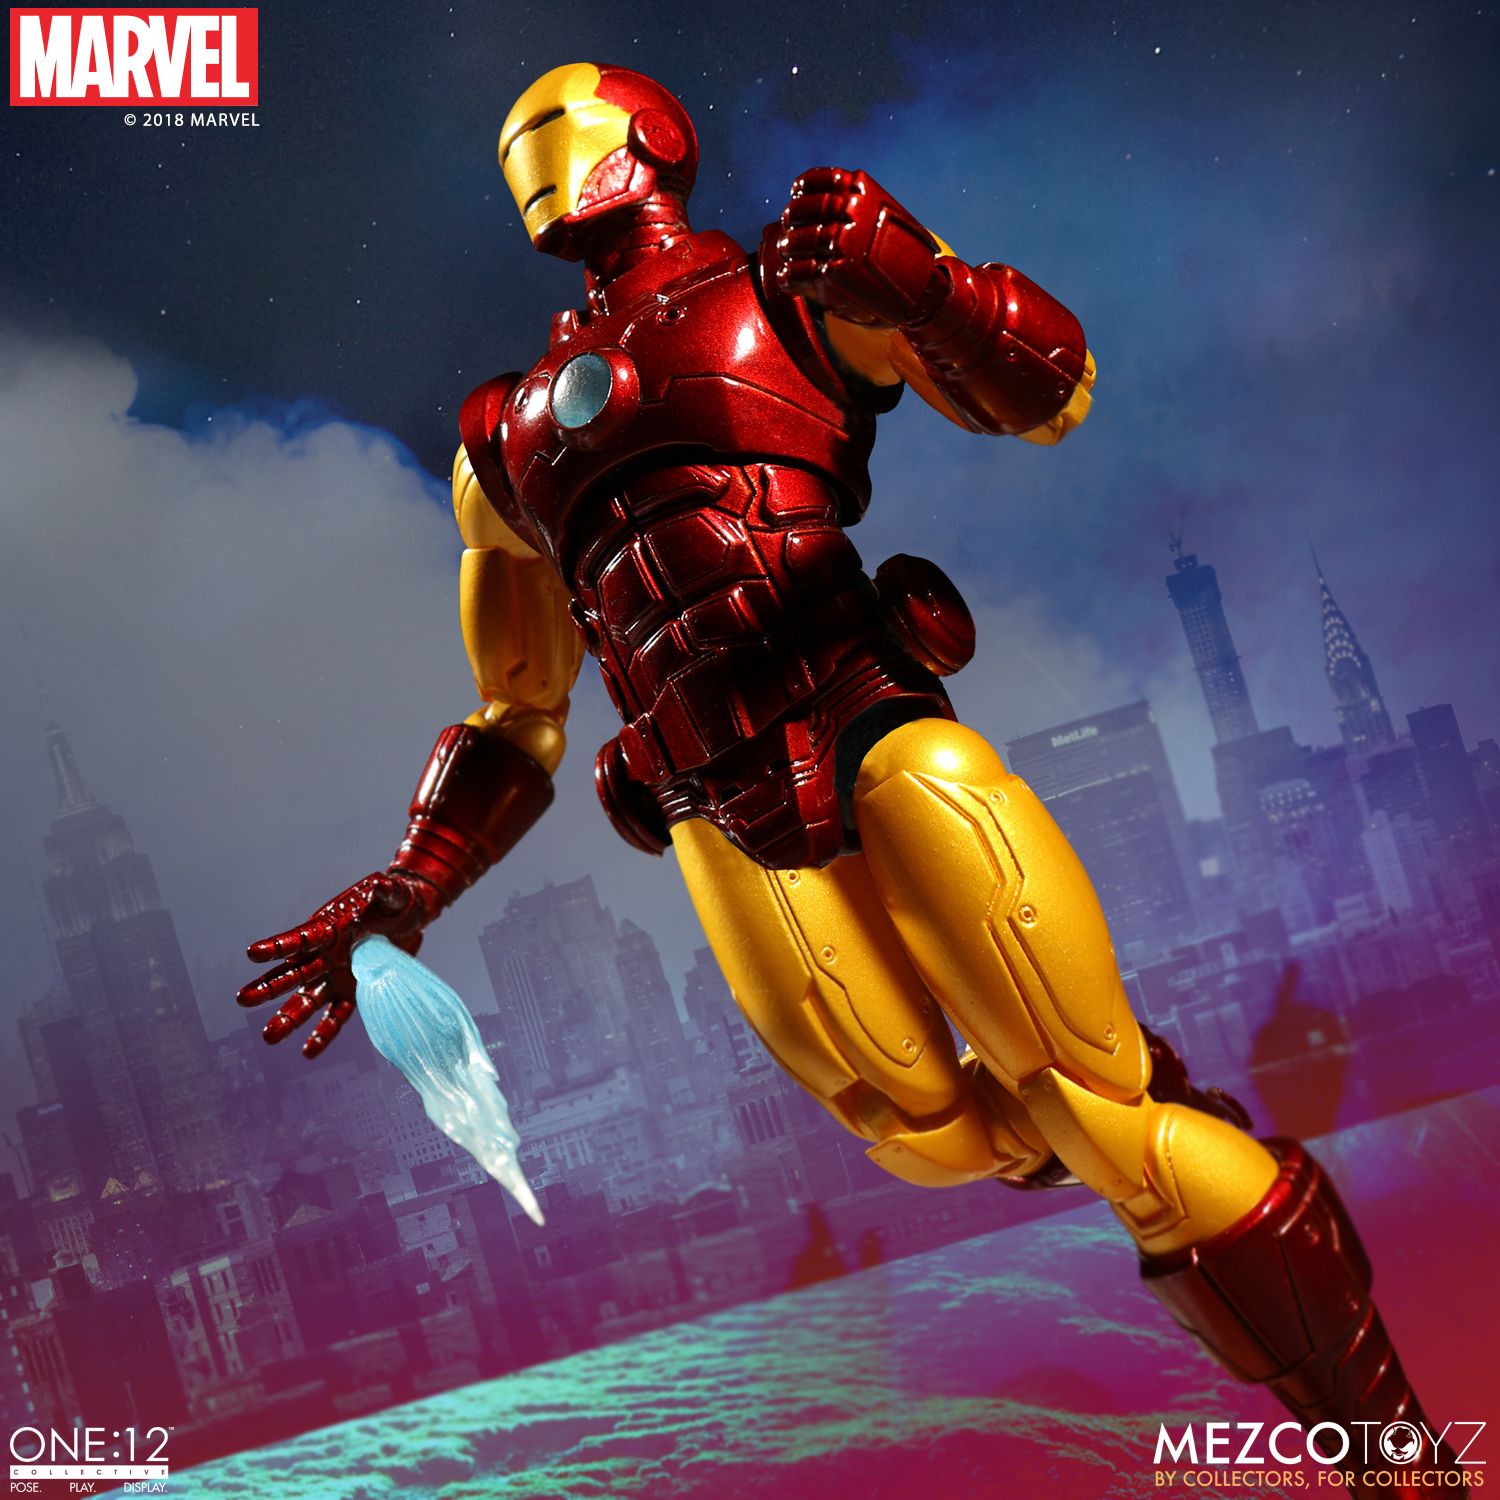 Mezco-Iron-Man-One12-Collective-006